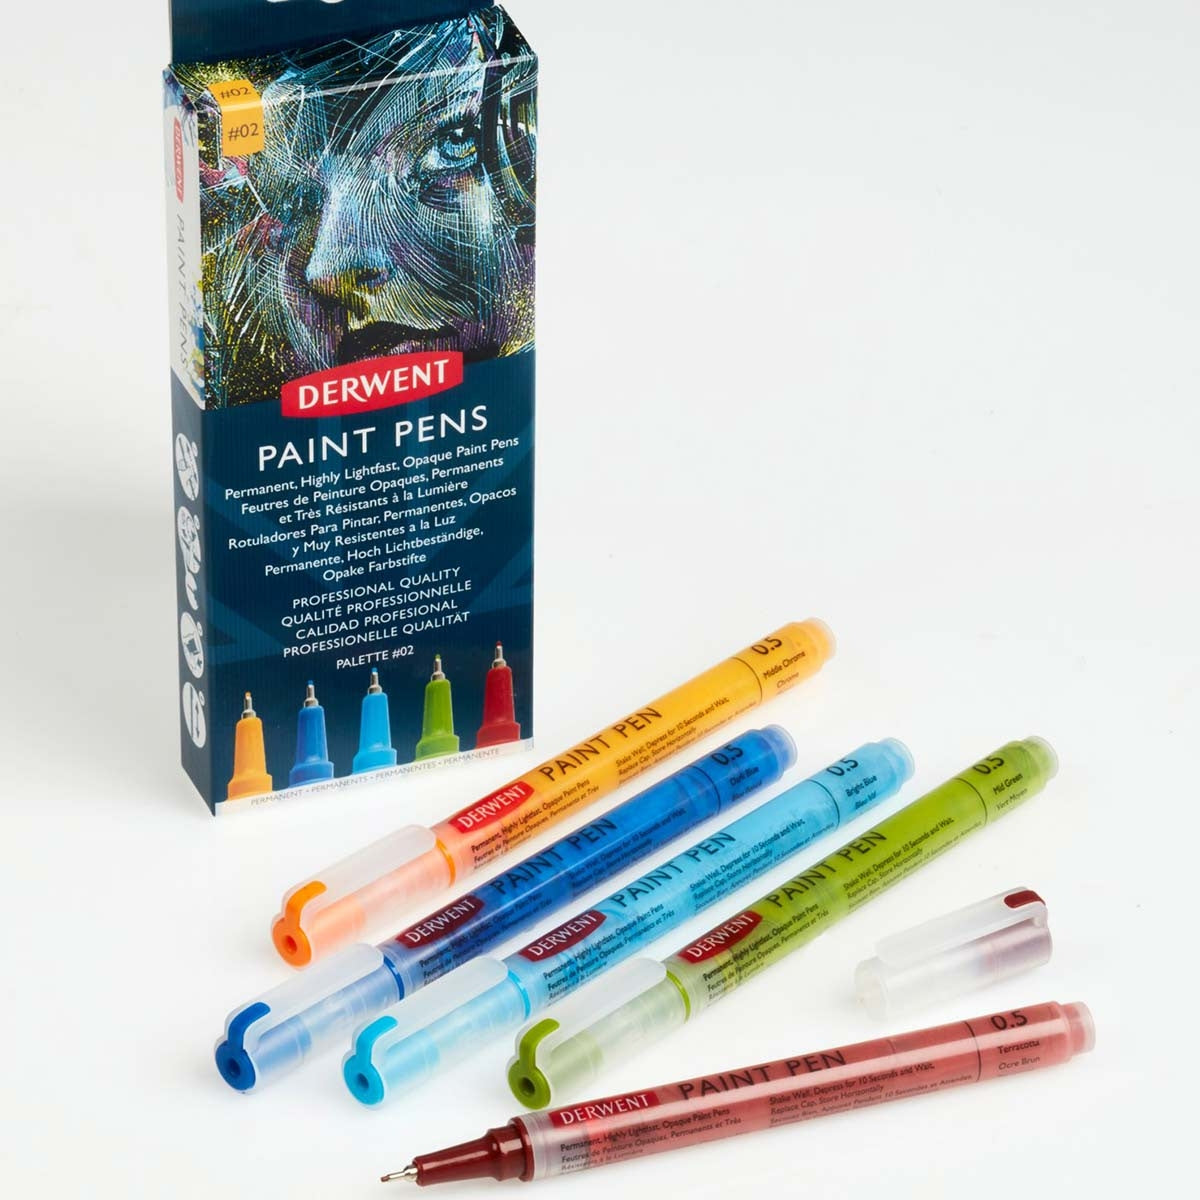 Derwent - Paint Pens - 5x Assorted Colours -  Palette No.2